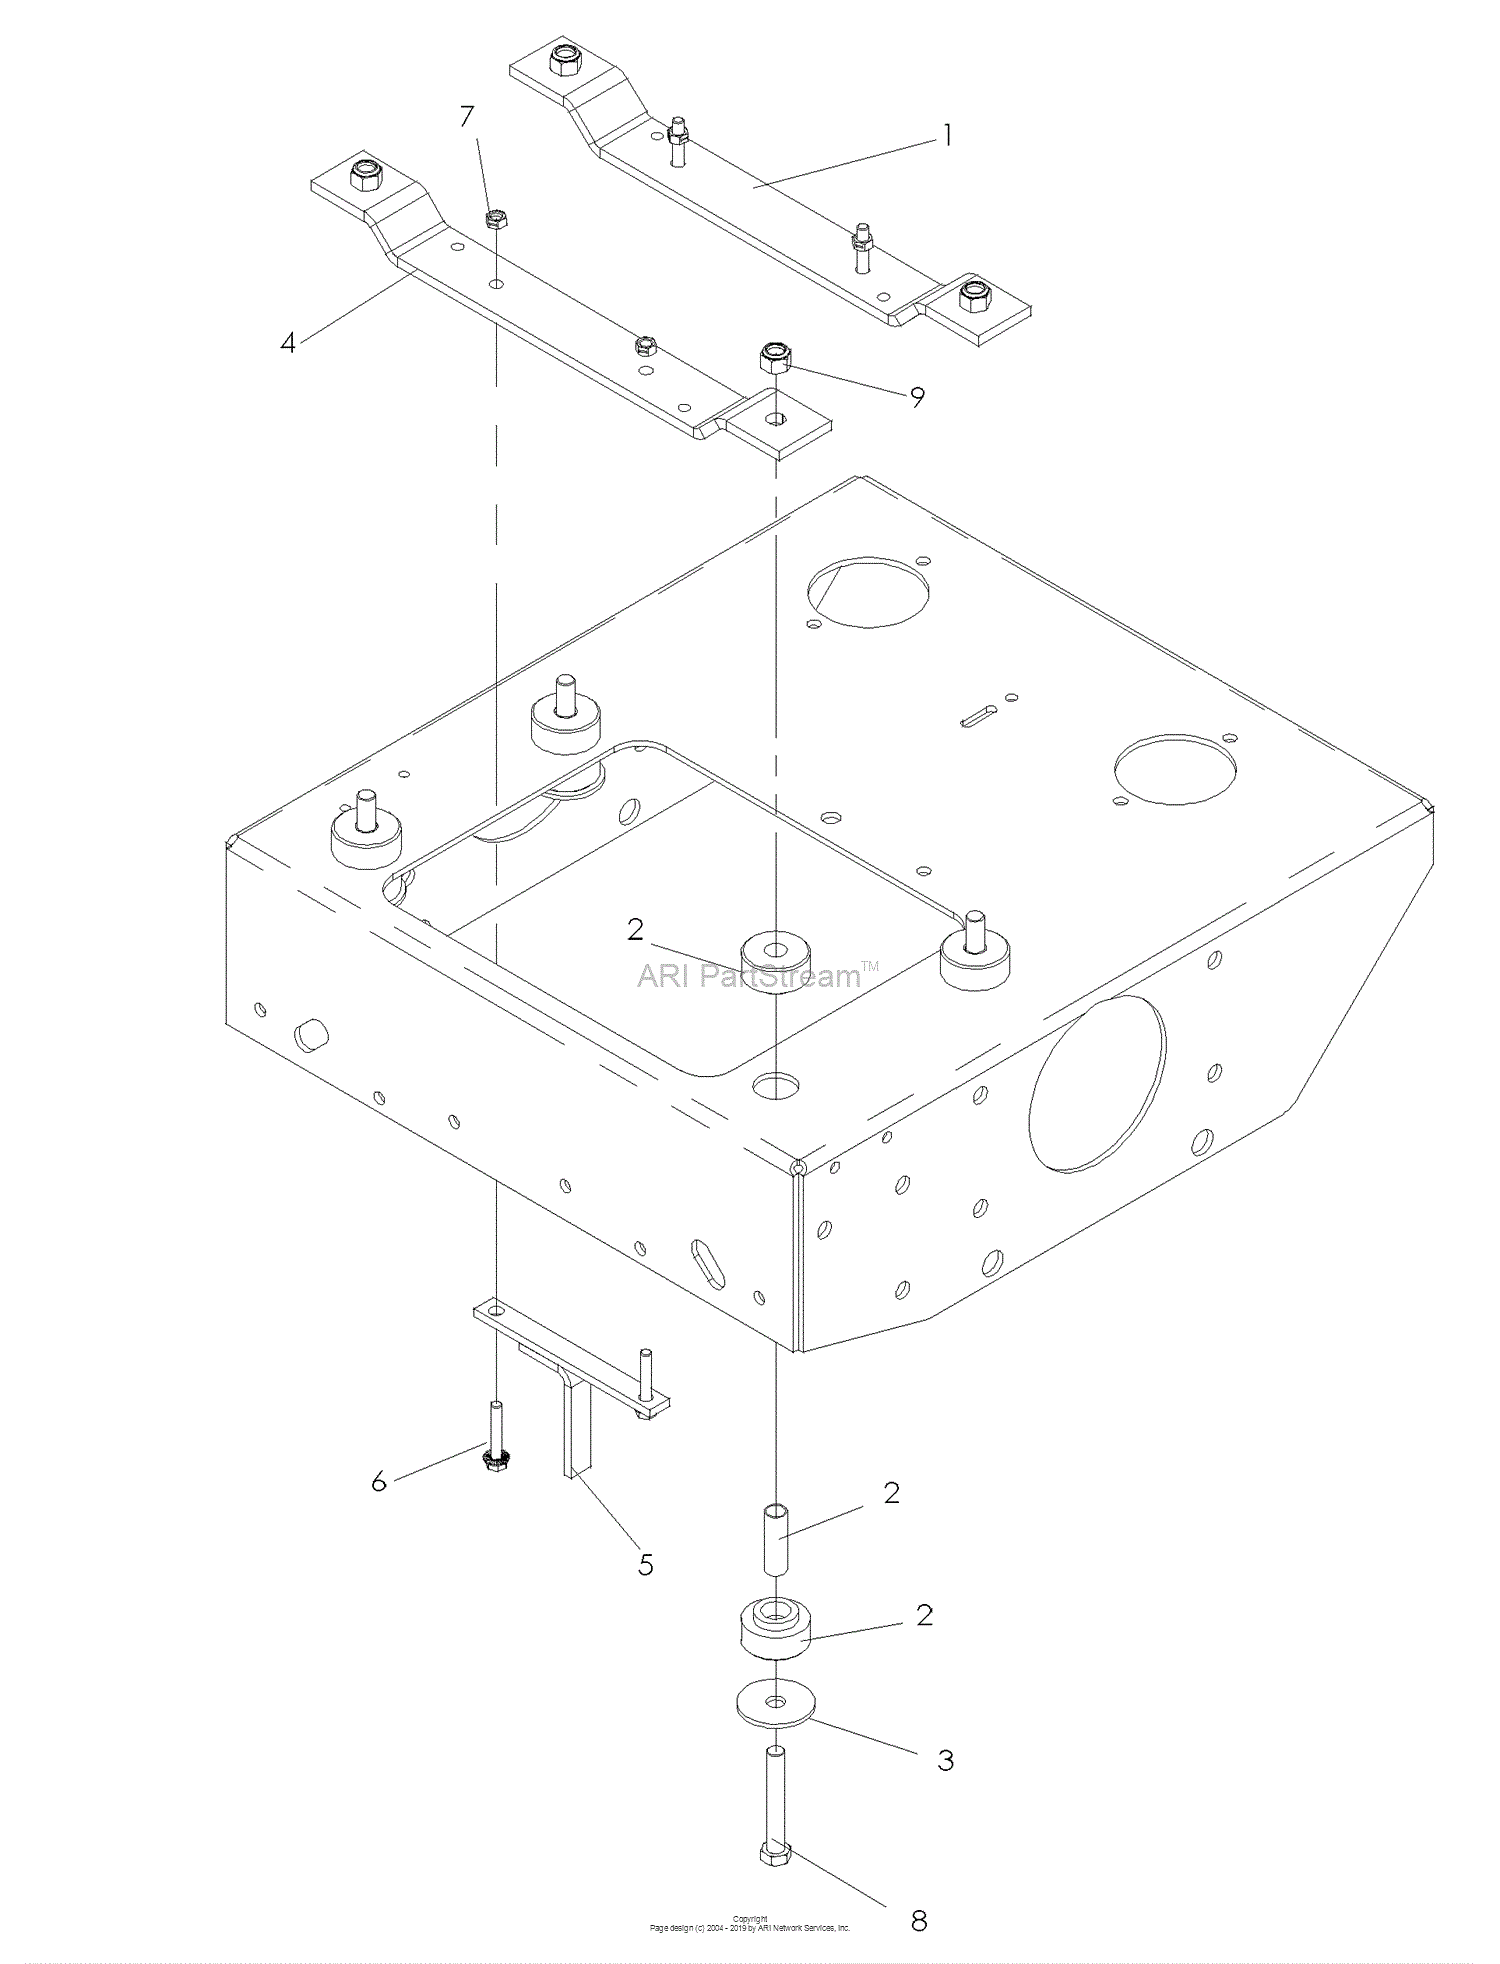 Dixon GRIZZLY ZTR 72 30HP KOHLER - 968999592 (2008) Parts Diagram 